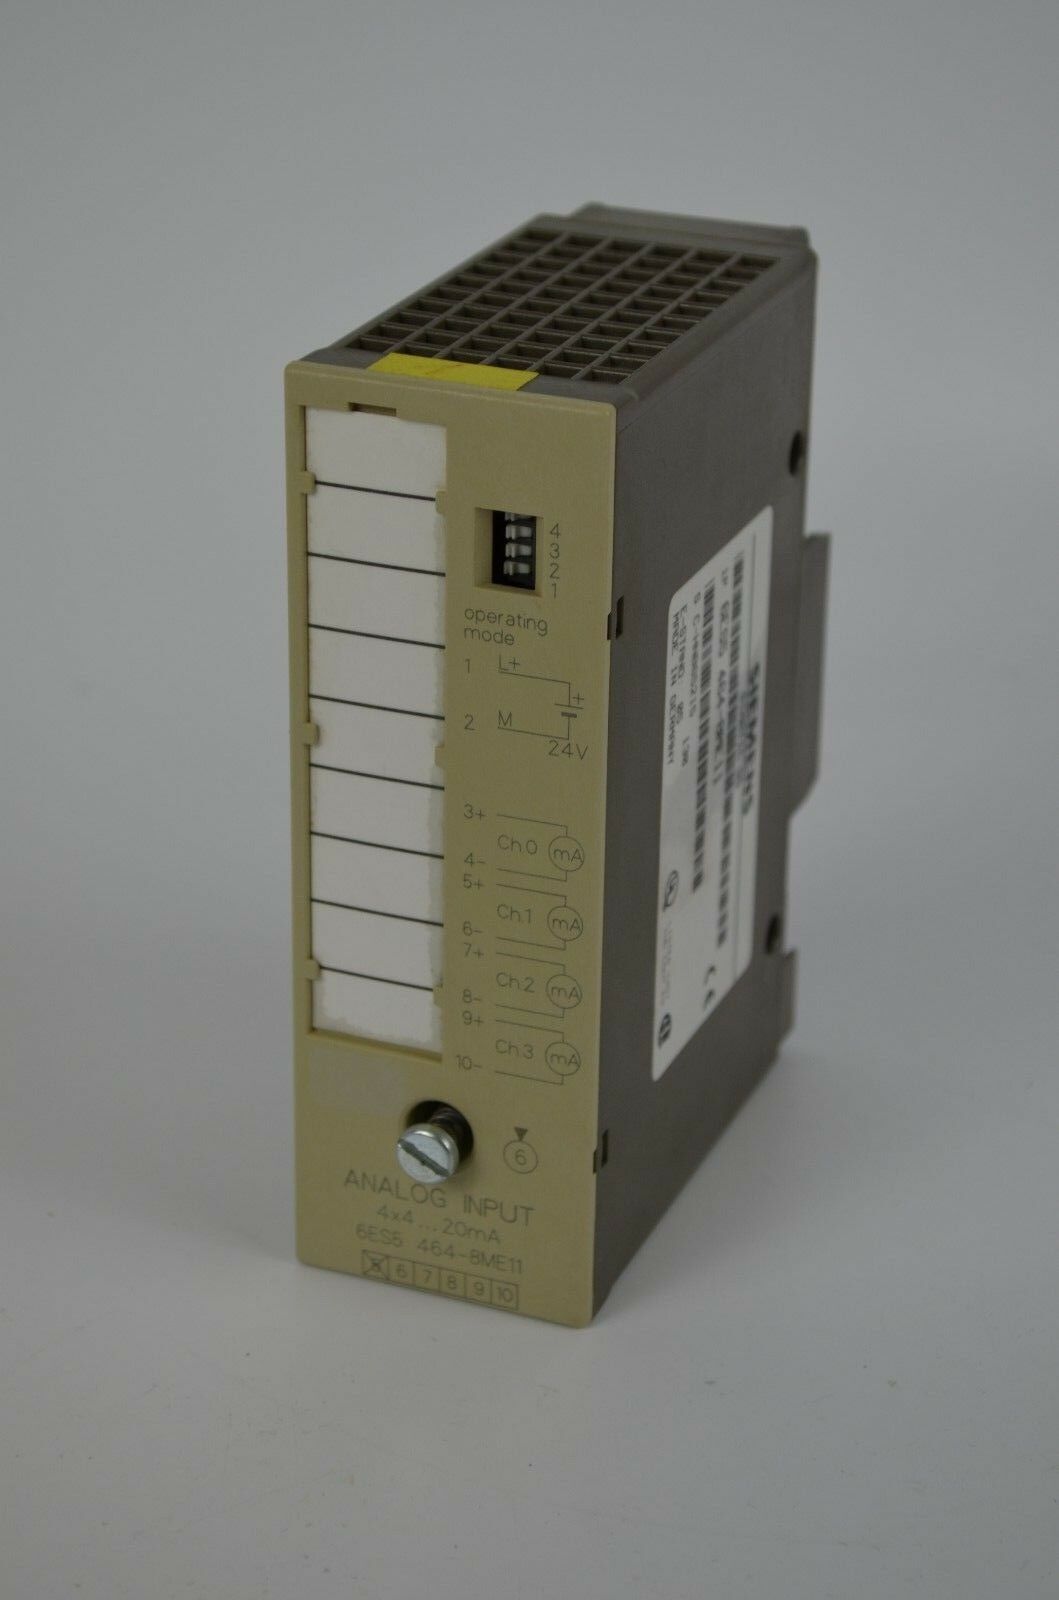 Siemens simatic S5 Analog input 464 6ES5 464-8ME11 ( 6ES5464-8ME11 ) S5-90U